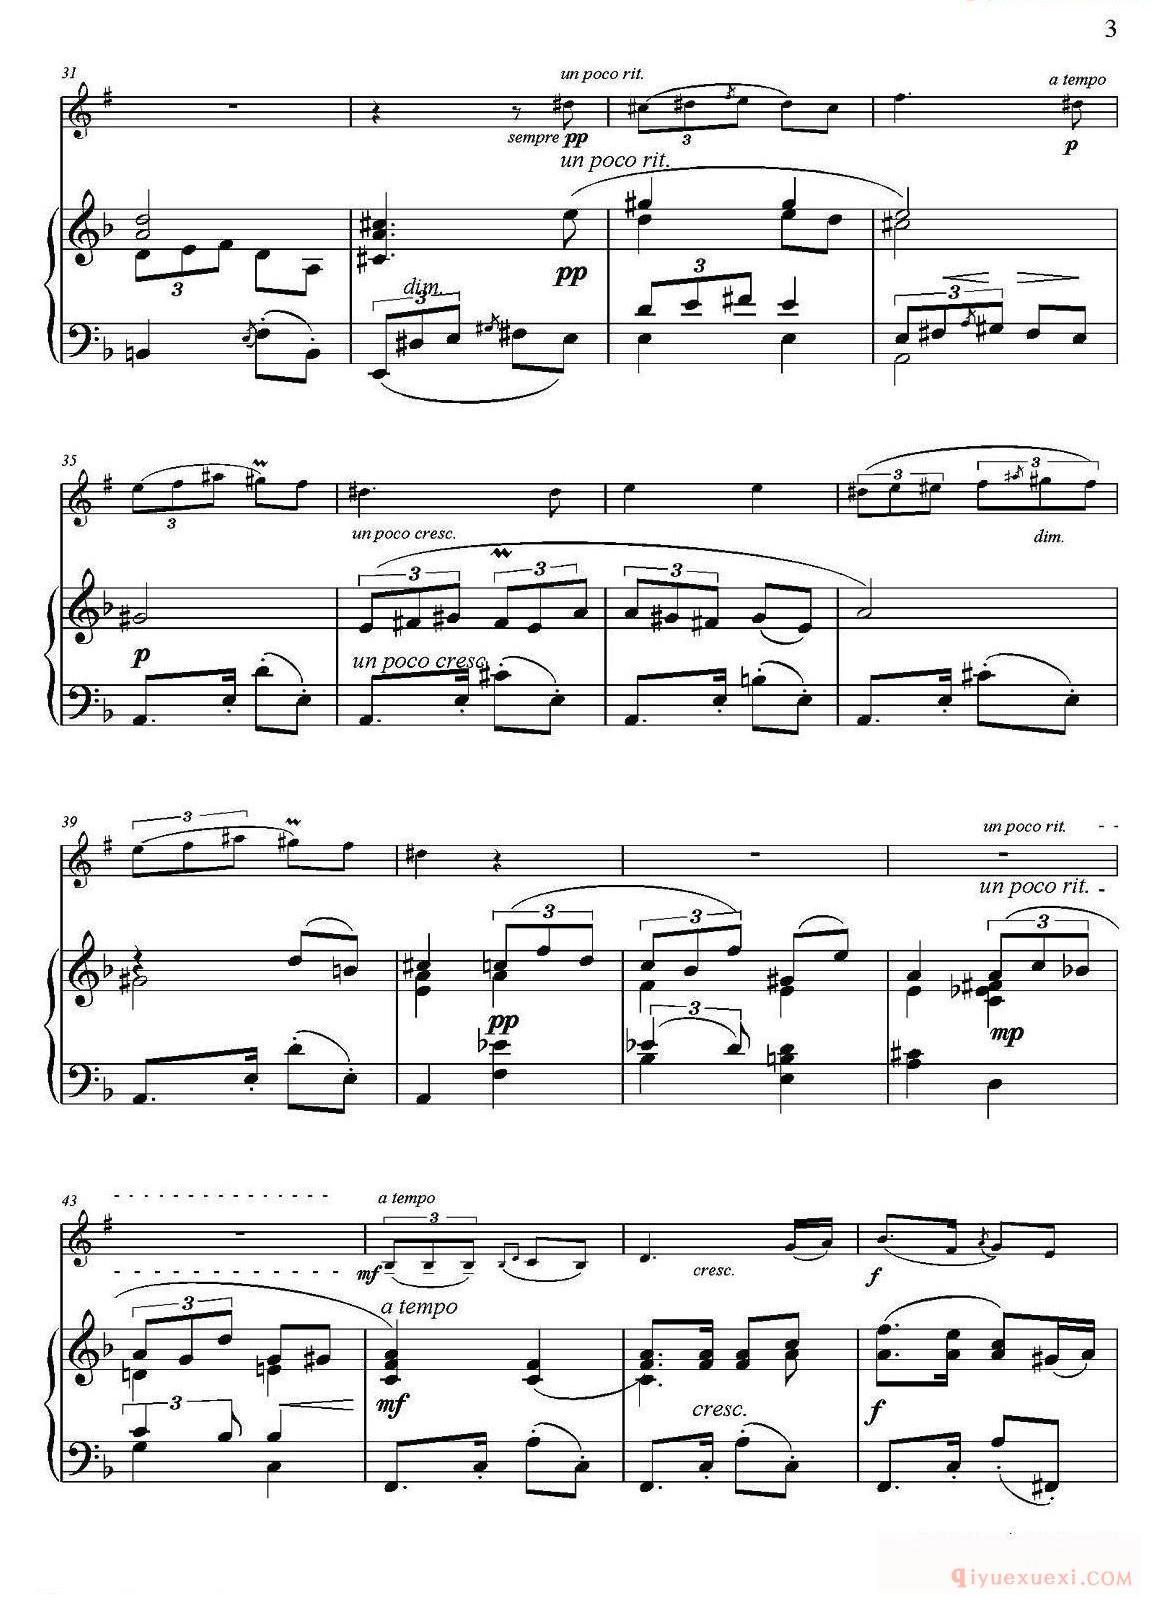 单簧管乐谱[Tango]单簧管+钢琴伴奏